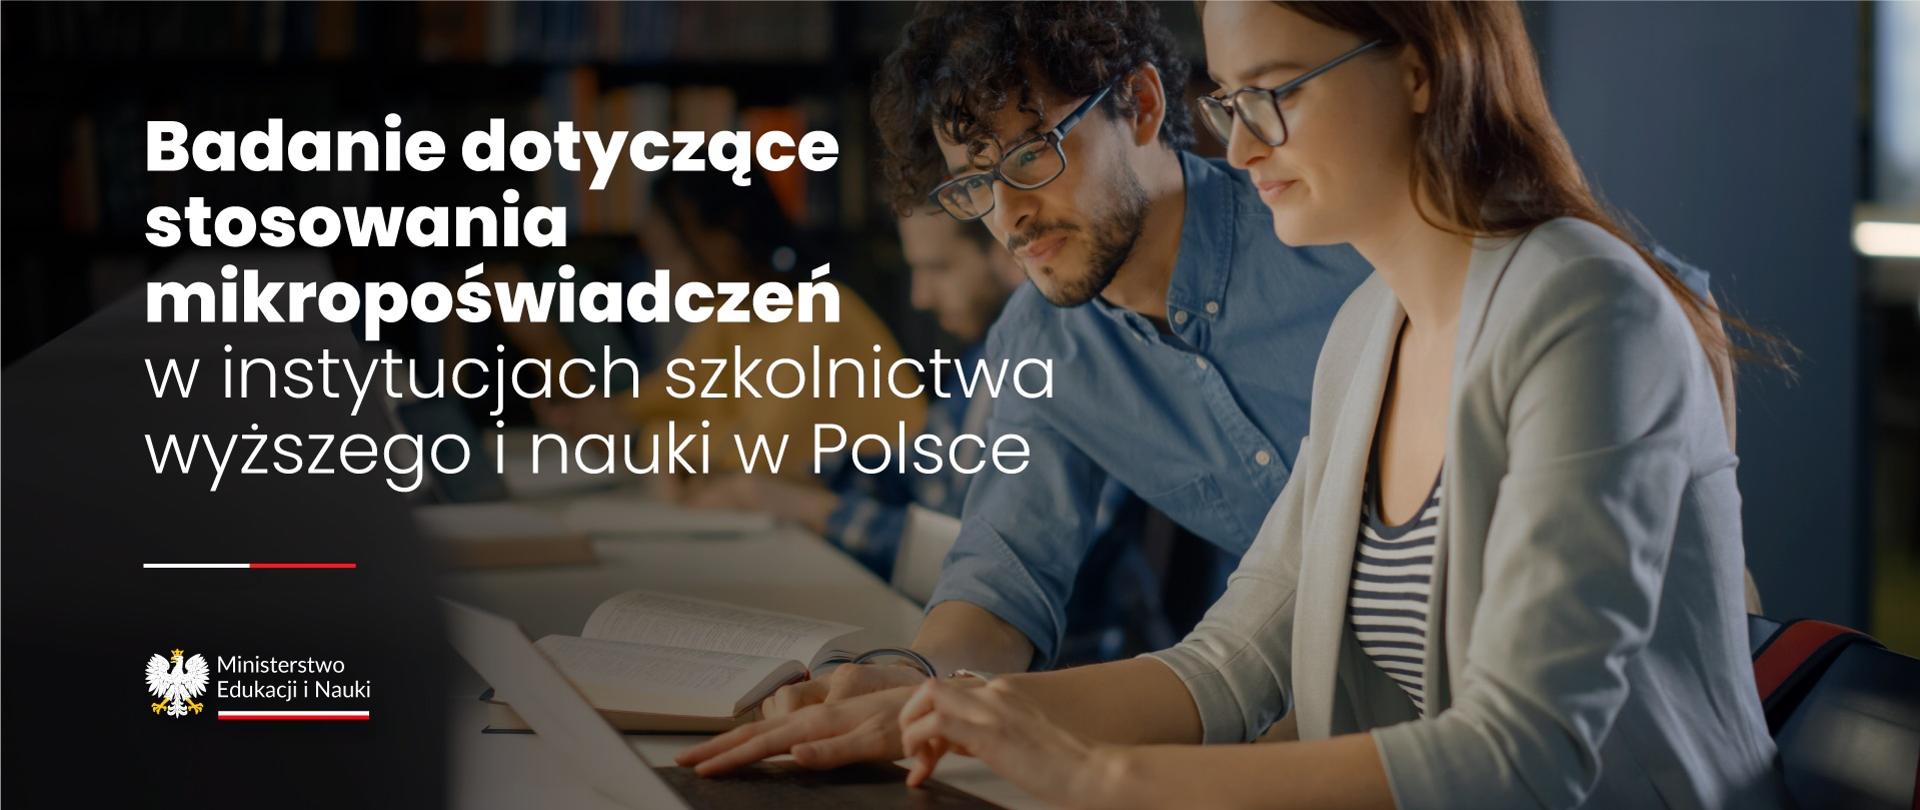 Kilka osób nachyla się nad komputerem, obok napis Badanie dotyczące stosowania mikropoświadczeń w instytucjach szkolnictwa wyższego i nauki w Polsce.